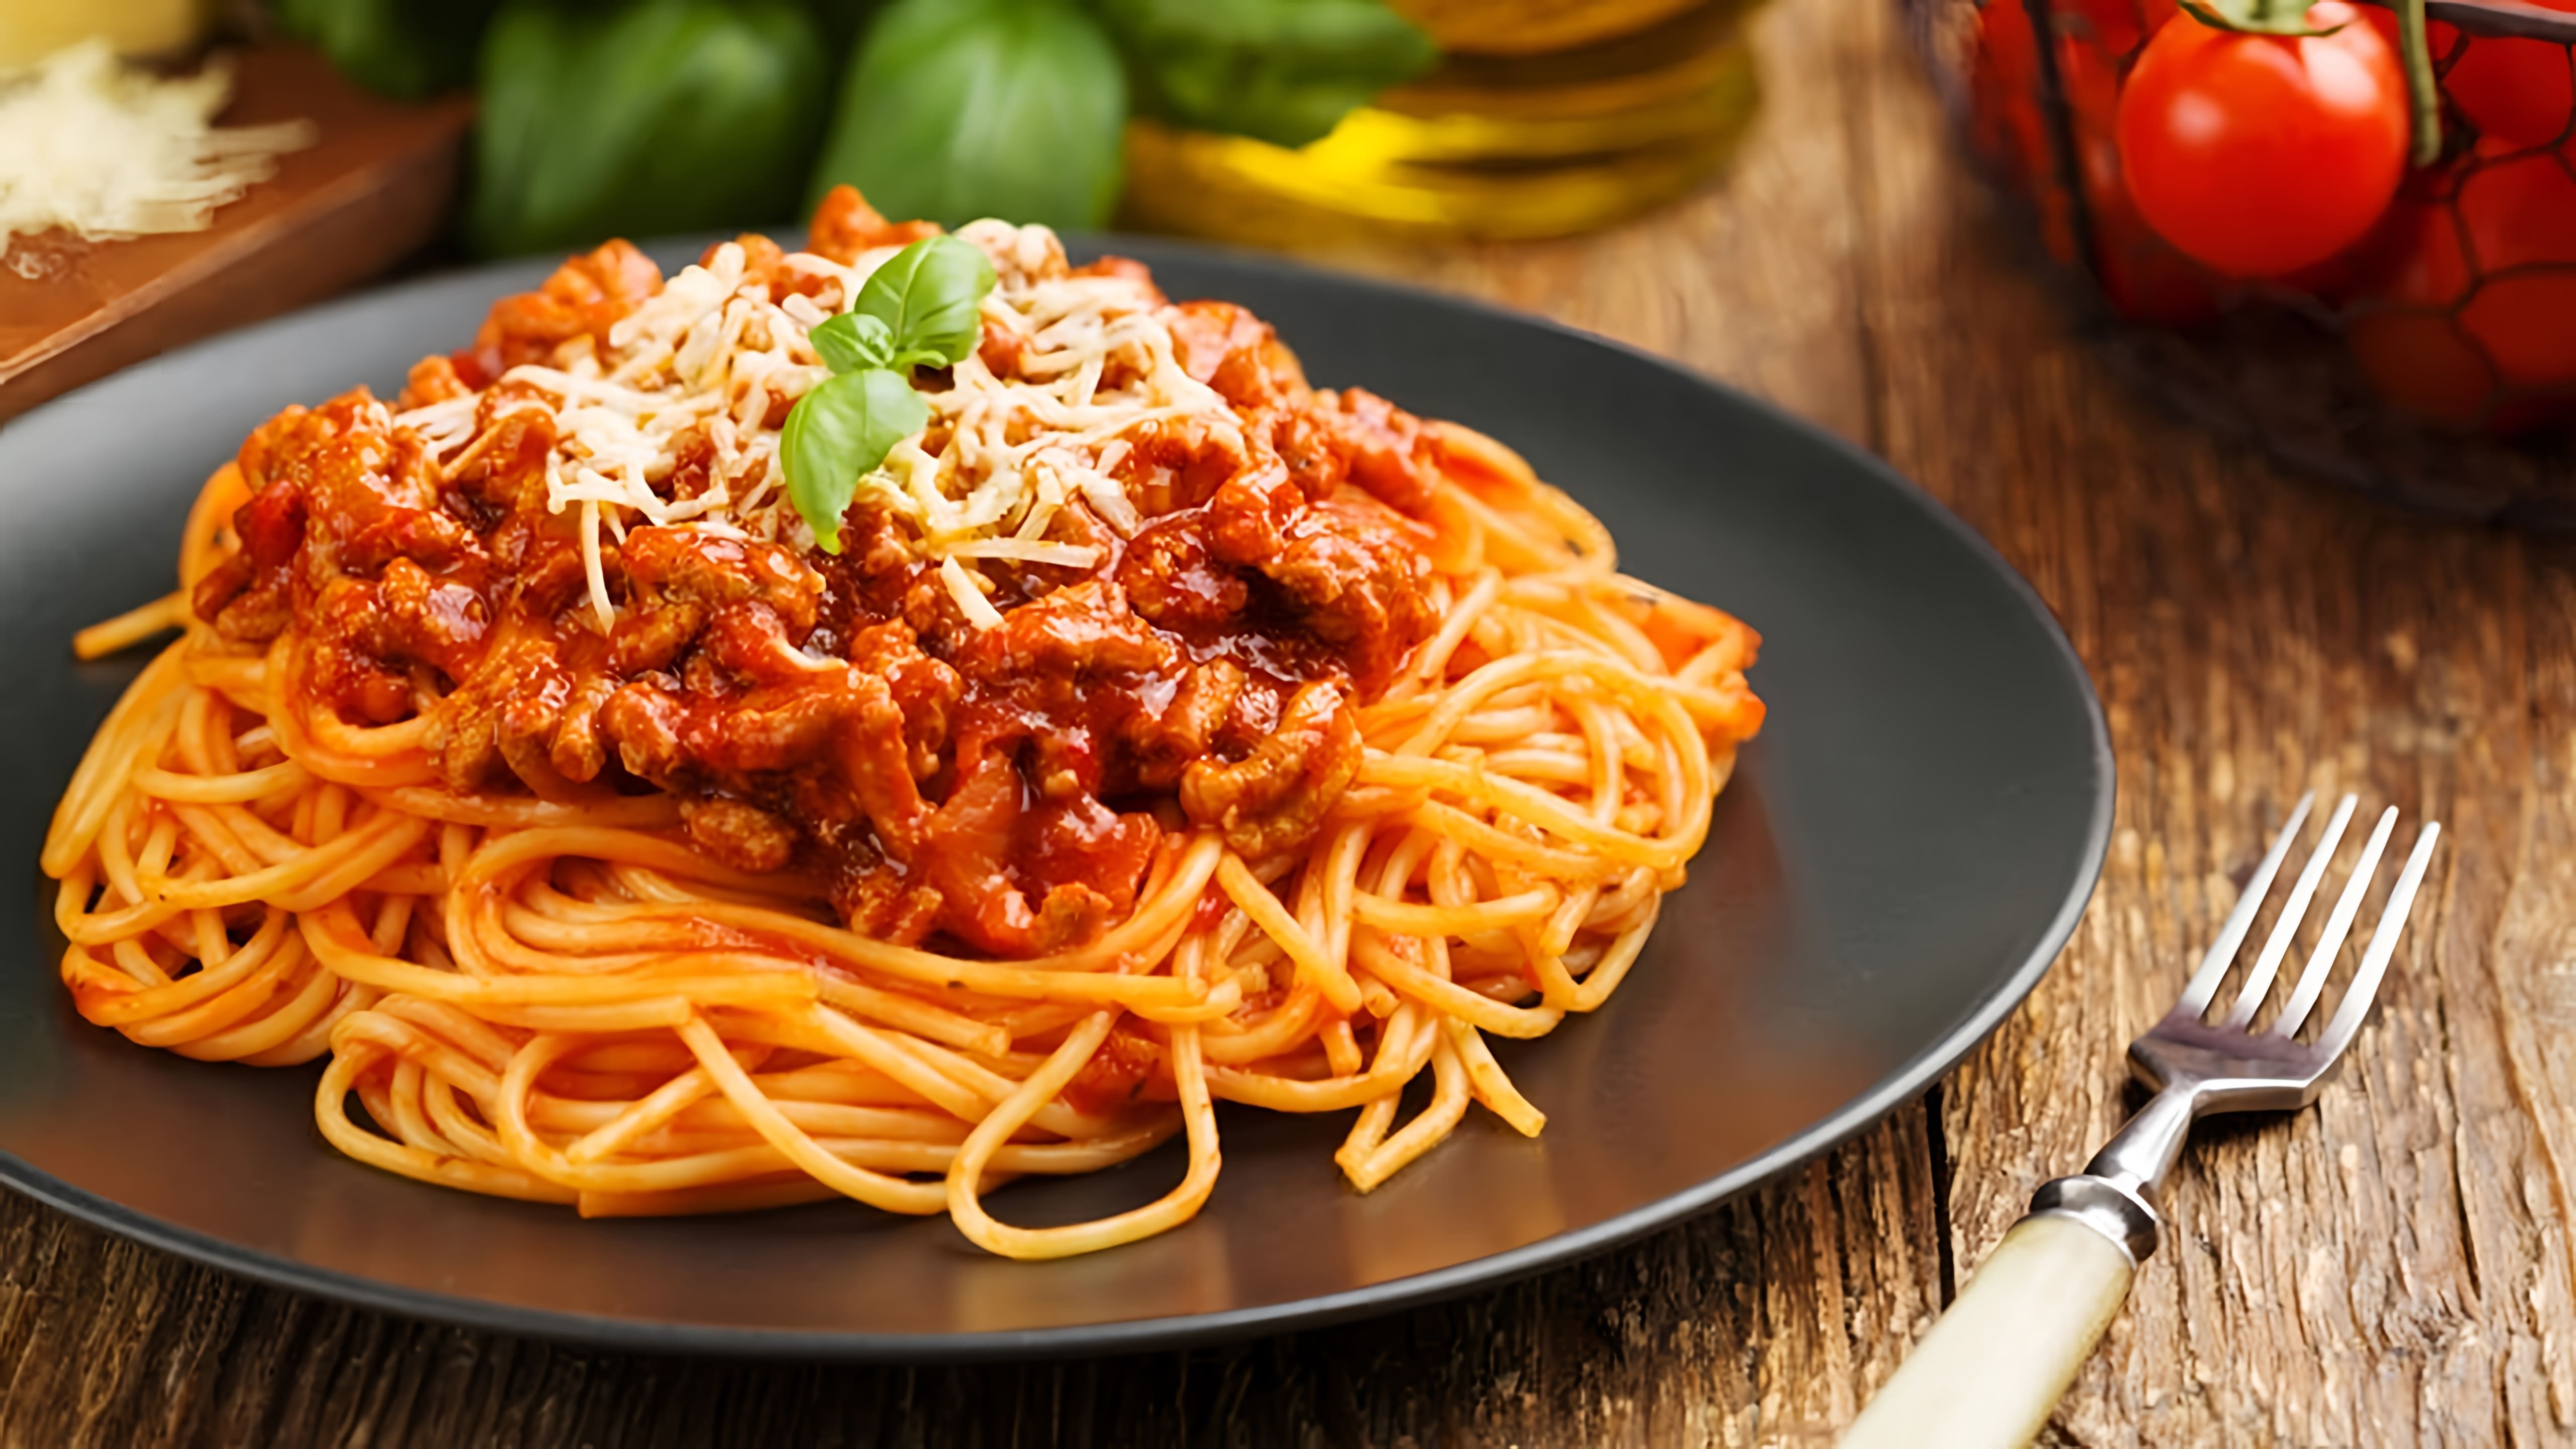 В этом видео демонстрируется рецепт приготовления классического итальянского блюда - спагетти болоньезе